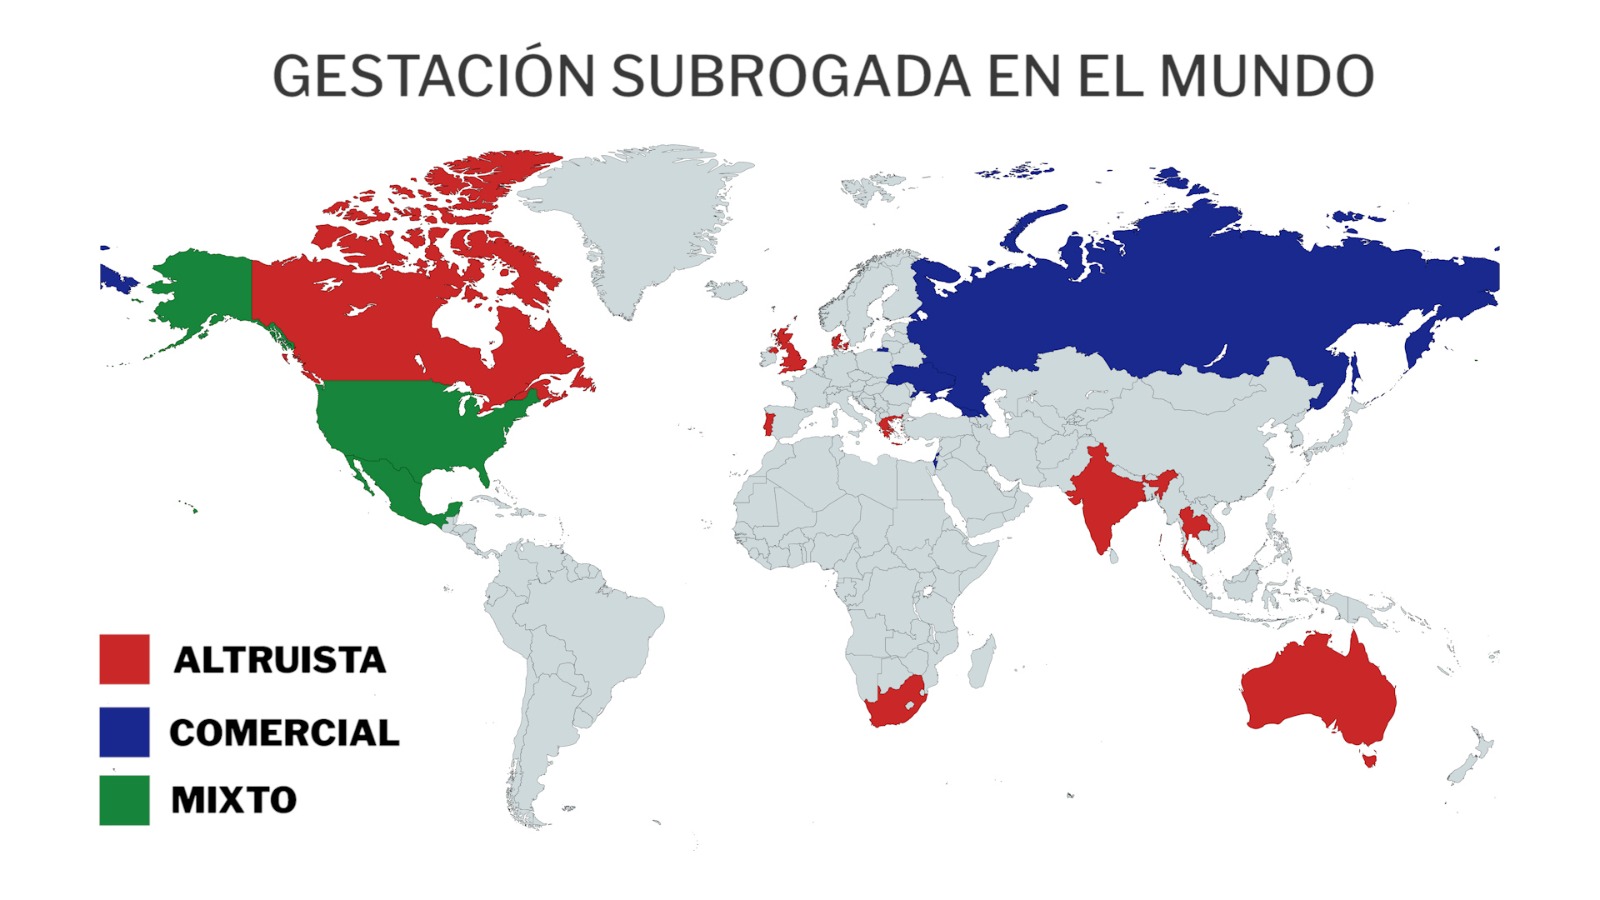 Mapa de la gestación subrogada en el mundo